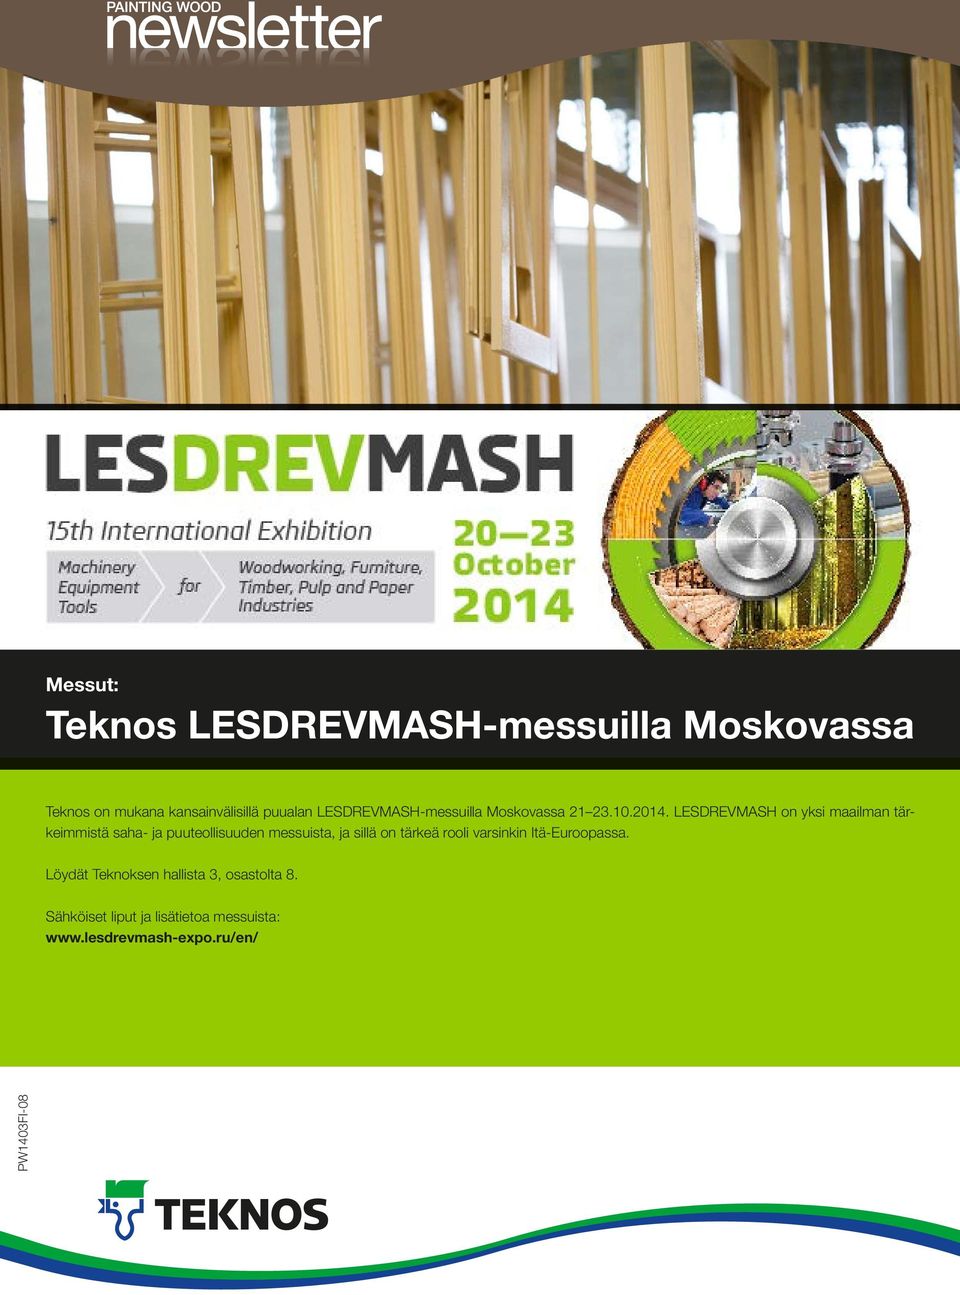 LESDREVMASH on yksi maailman tärkeimmistä saha- ja puuteollisuuden messuista, ja sillä on tärkeä